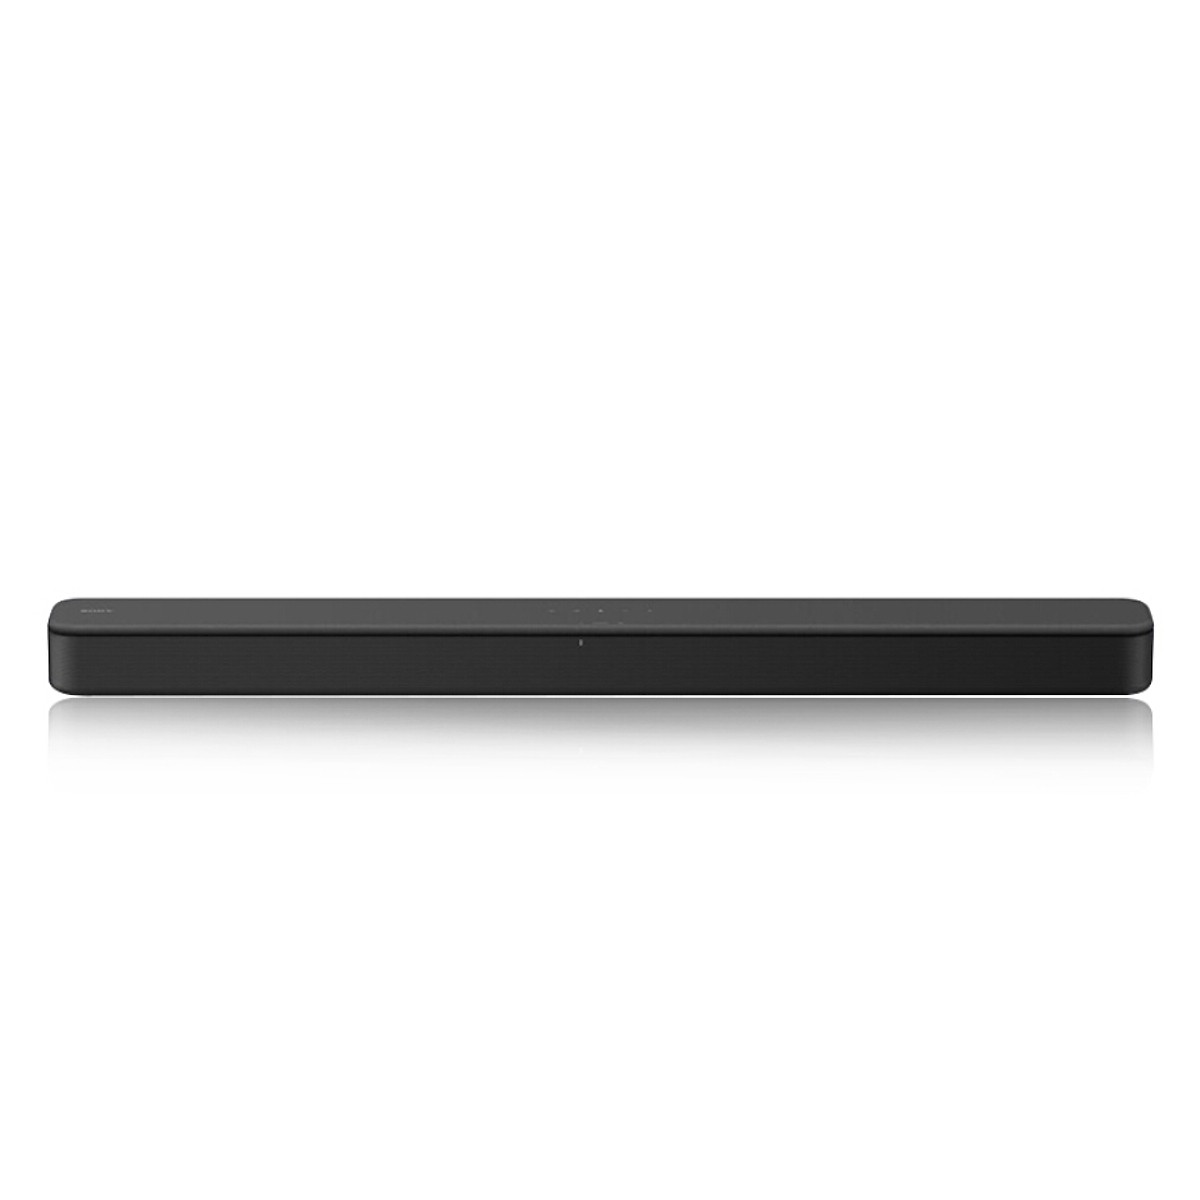 Loa thanh soundbar Sony 2.0 HT-S100F - Hàng chính hãng